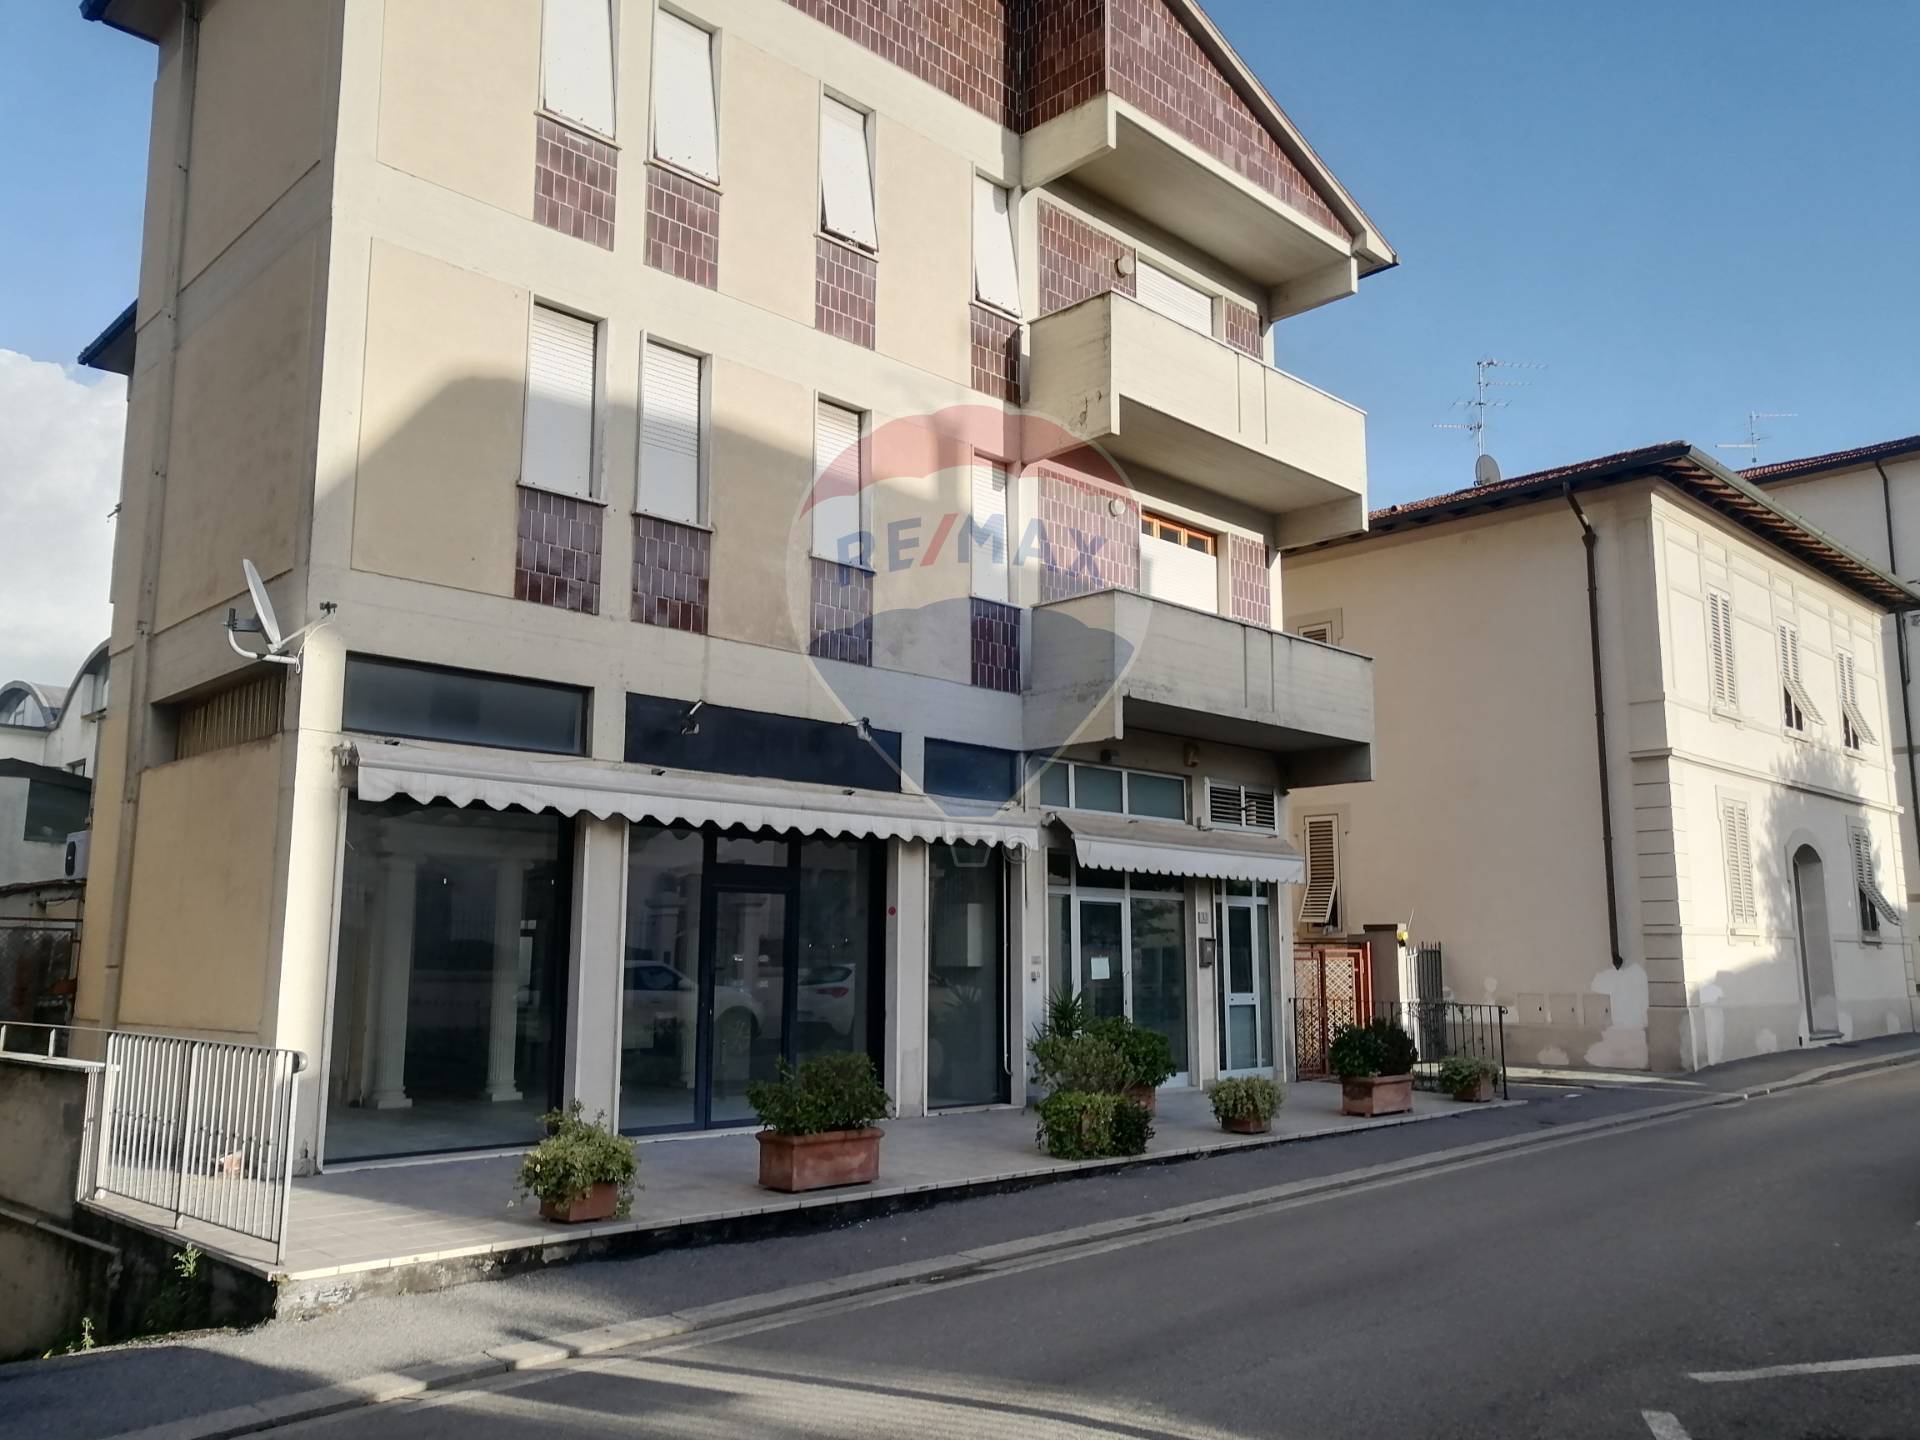 Negozio / Locale in vendita a San Giovanni Valdarno, 9999 locali, zona Zona: Centro, prezzo € 120.000 | CambioCasa.it